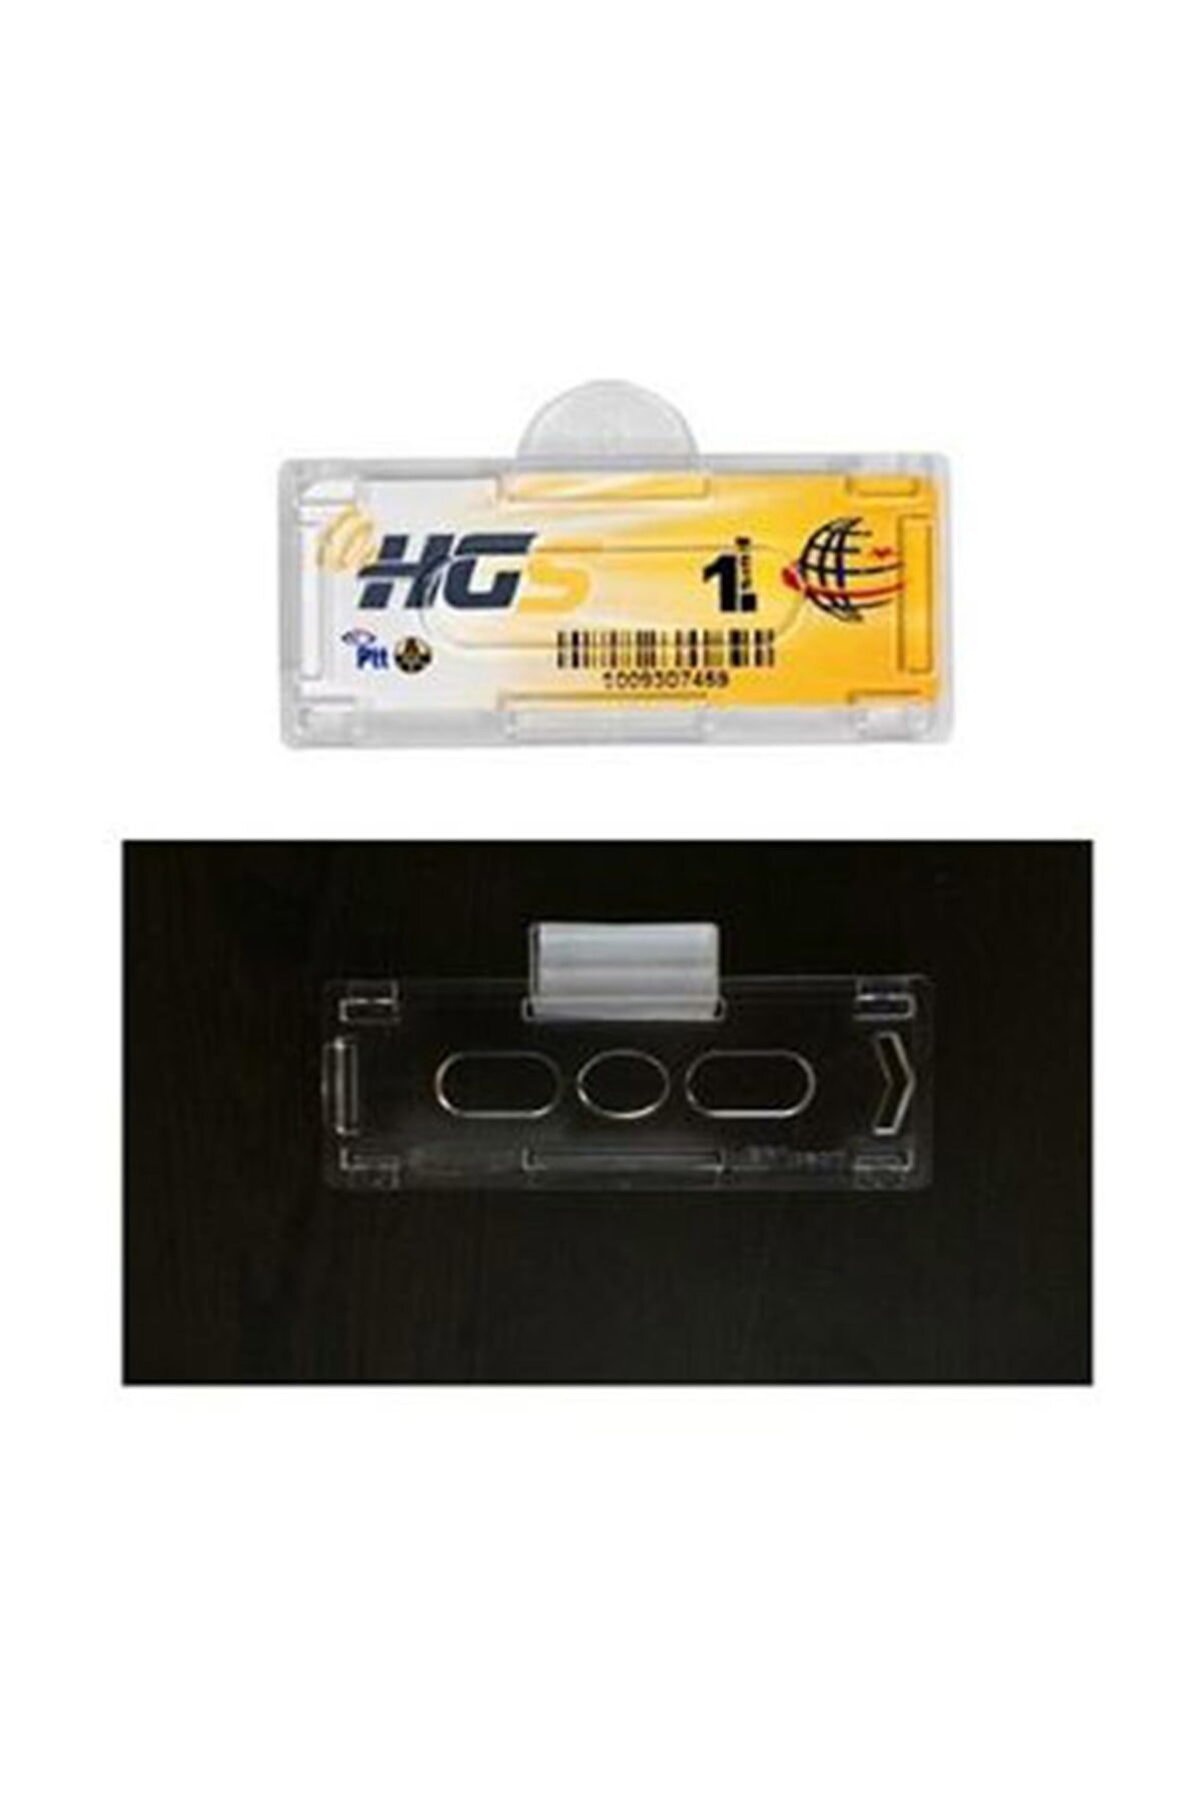 narım 10 Adet Hgs Etiket Kabı Şeffaf Yapıştırmalı Sert Plastik Hgs Takmatik